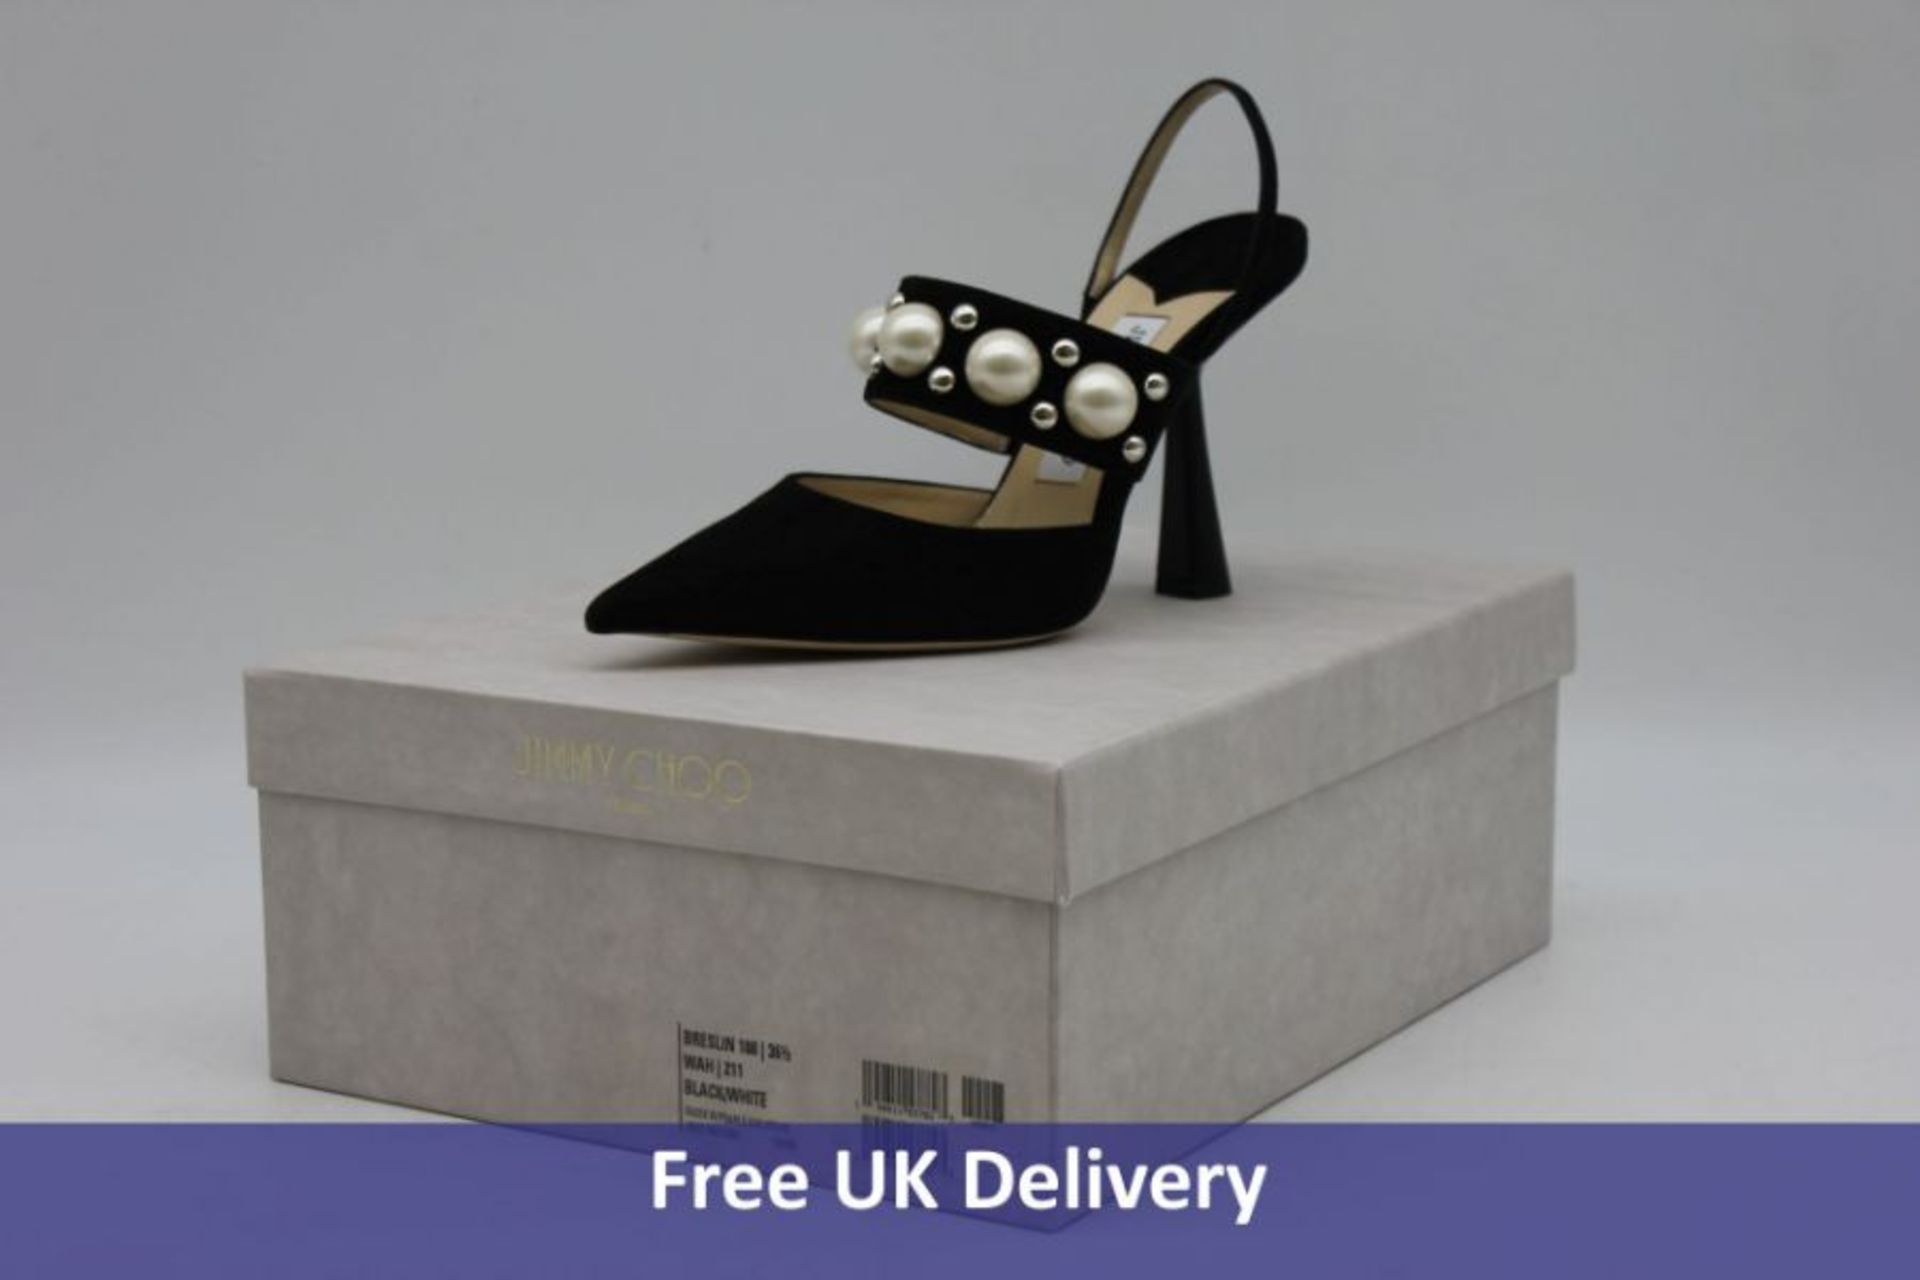 Jimmy Choo Woman's Breslin 100 Suede Shoe, Black/White, Size 37.5